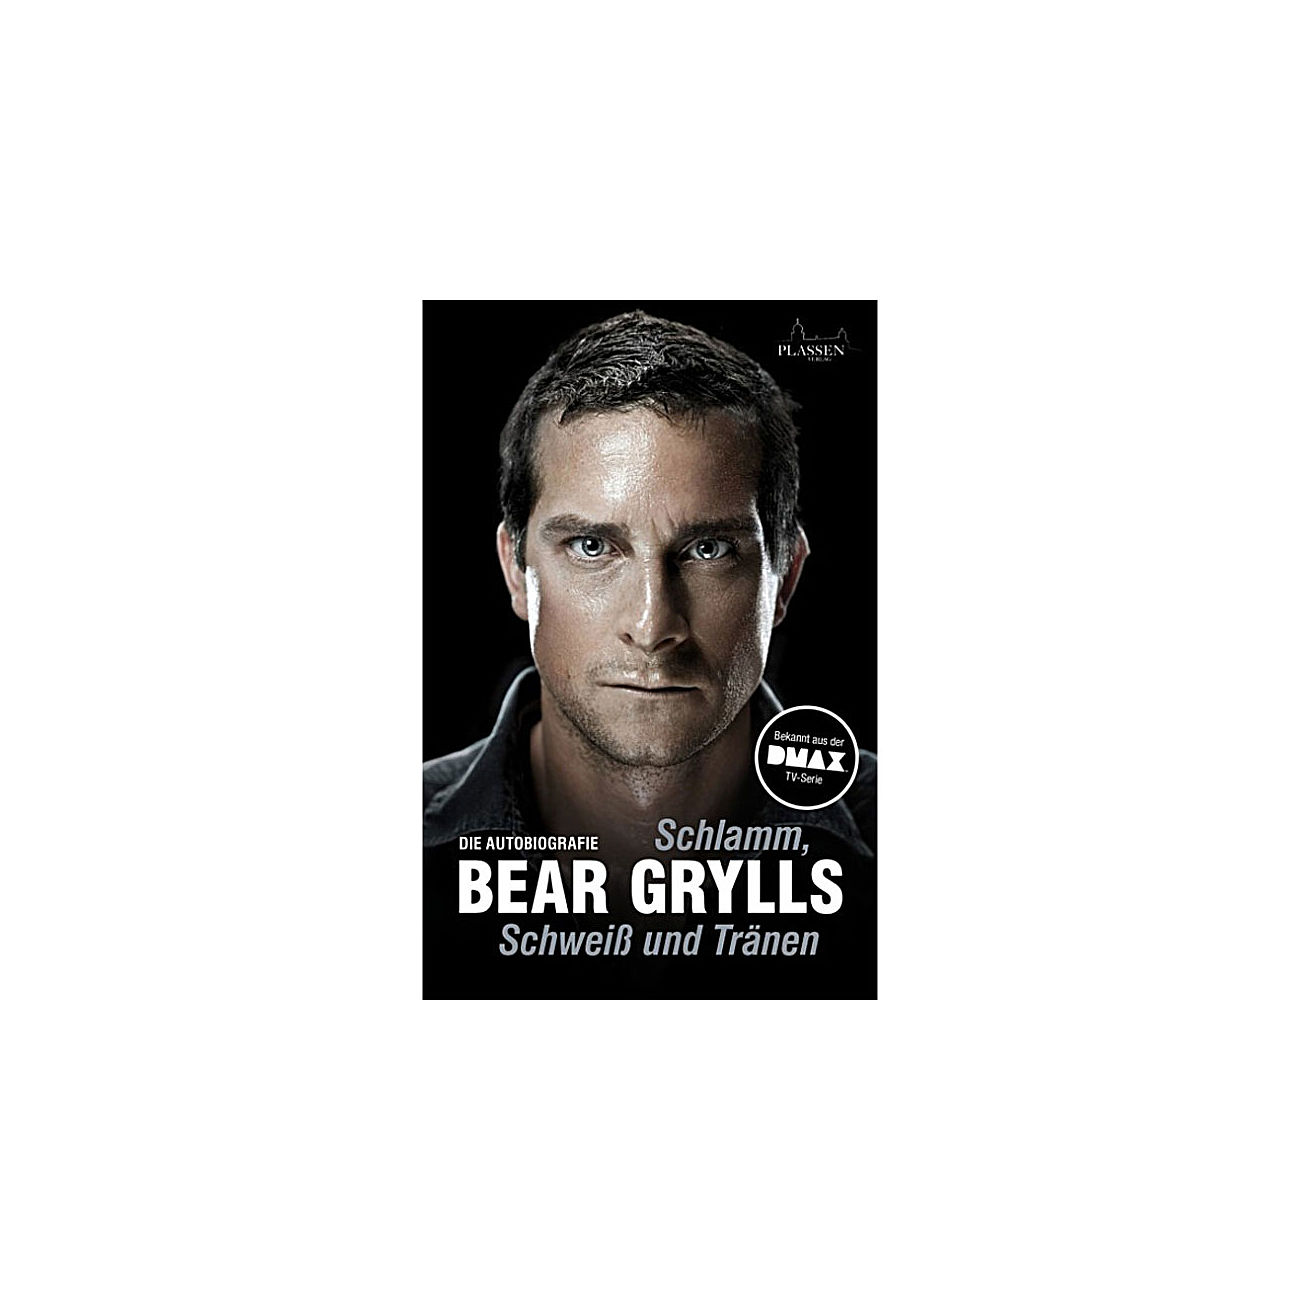 Bear Grylls - Schlamm, Schweiß und Tränen (gebraucht - sehr gut)